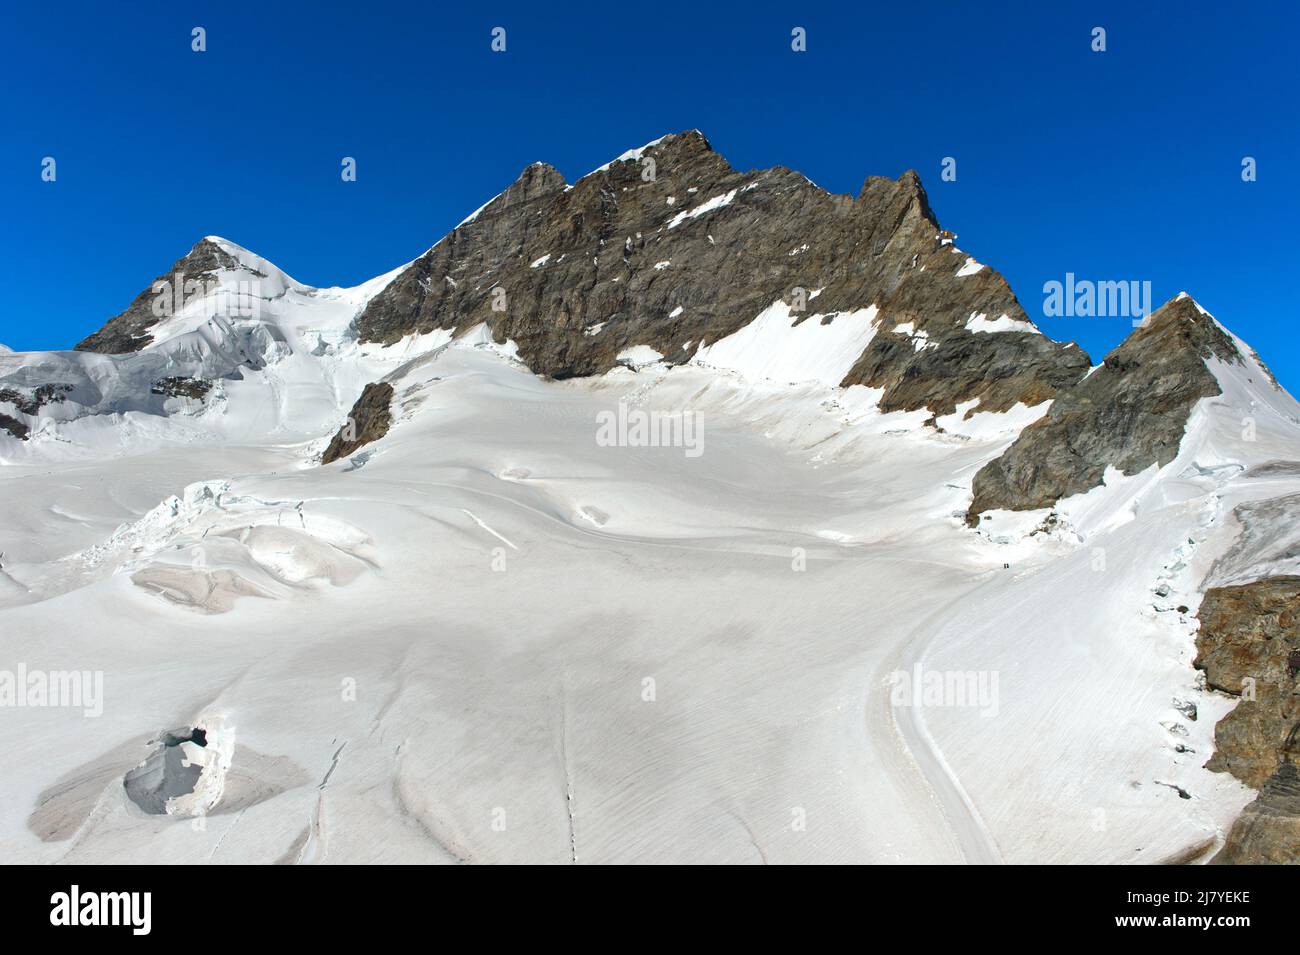 Vue sur le glacier Jungfrauferme jusqu'au sommet de la Jungfrau, Grindelwald, Oberland bernois, Suisse Banque D'Images